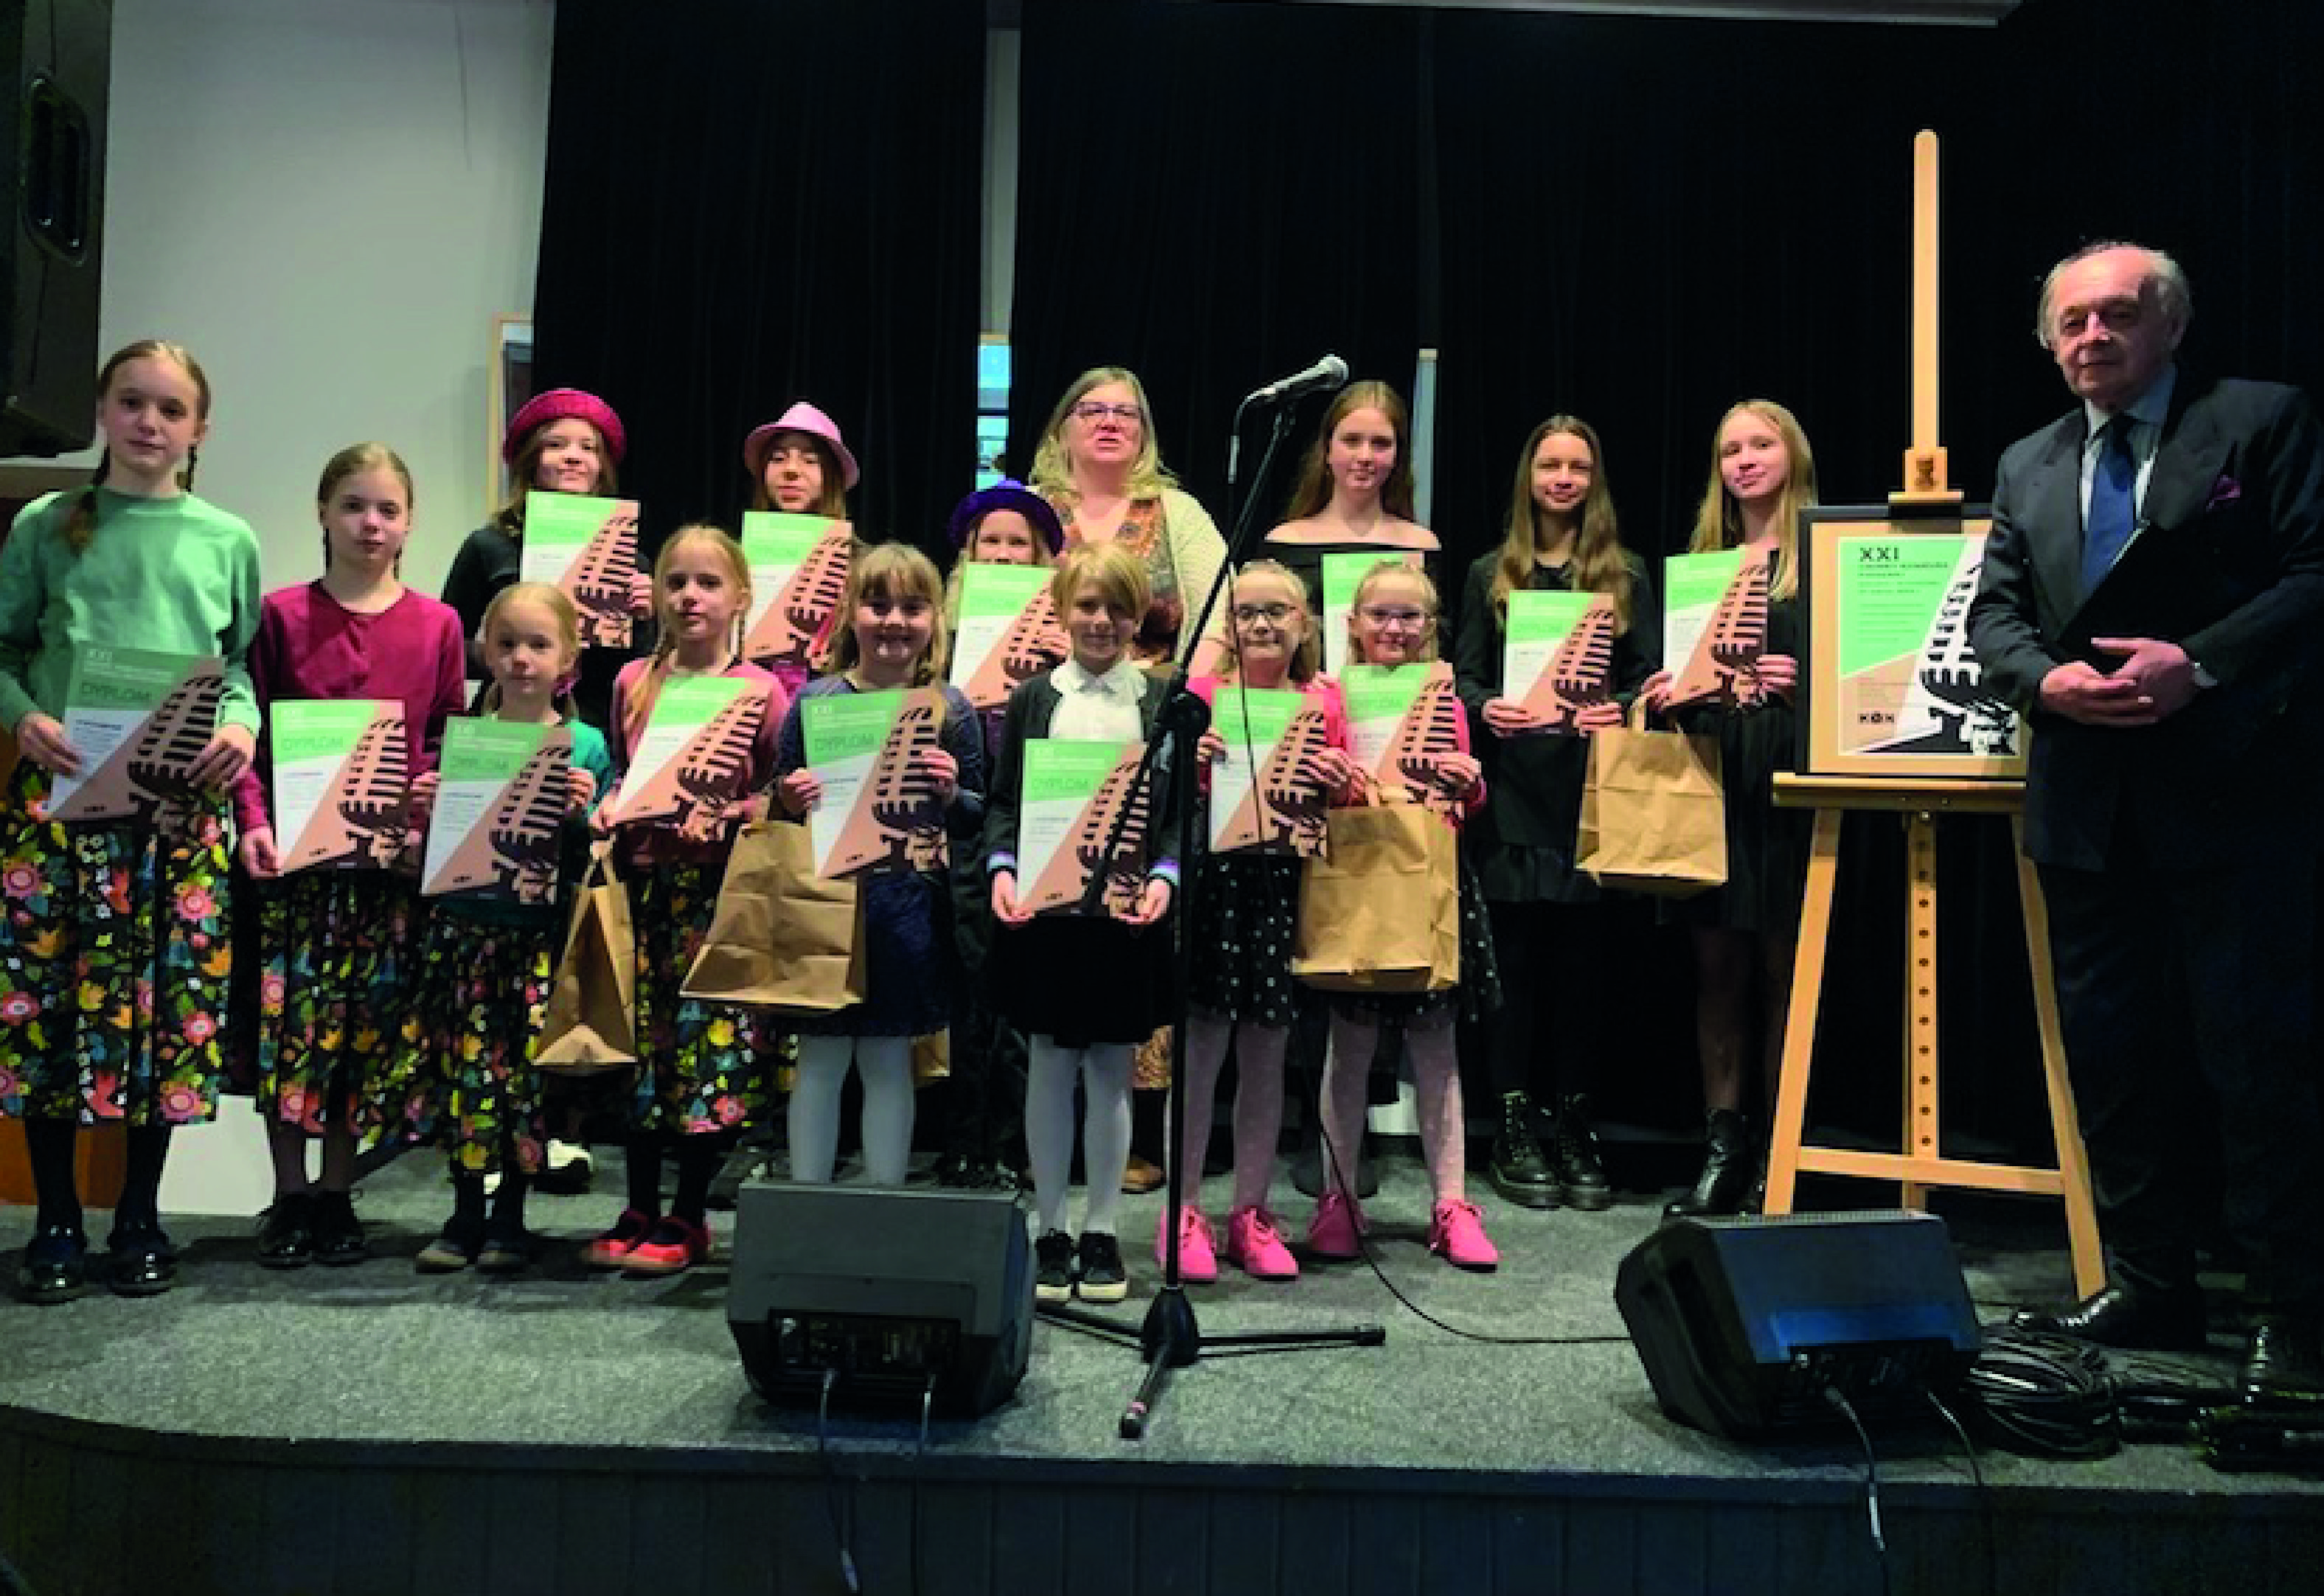 Nagrodzone dzieci wraz z członkami jury stojący na scenie